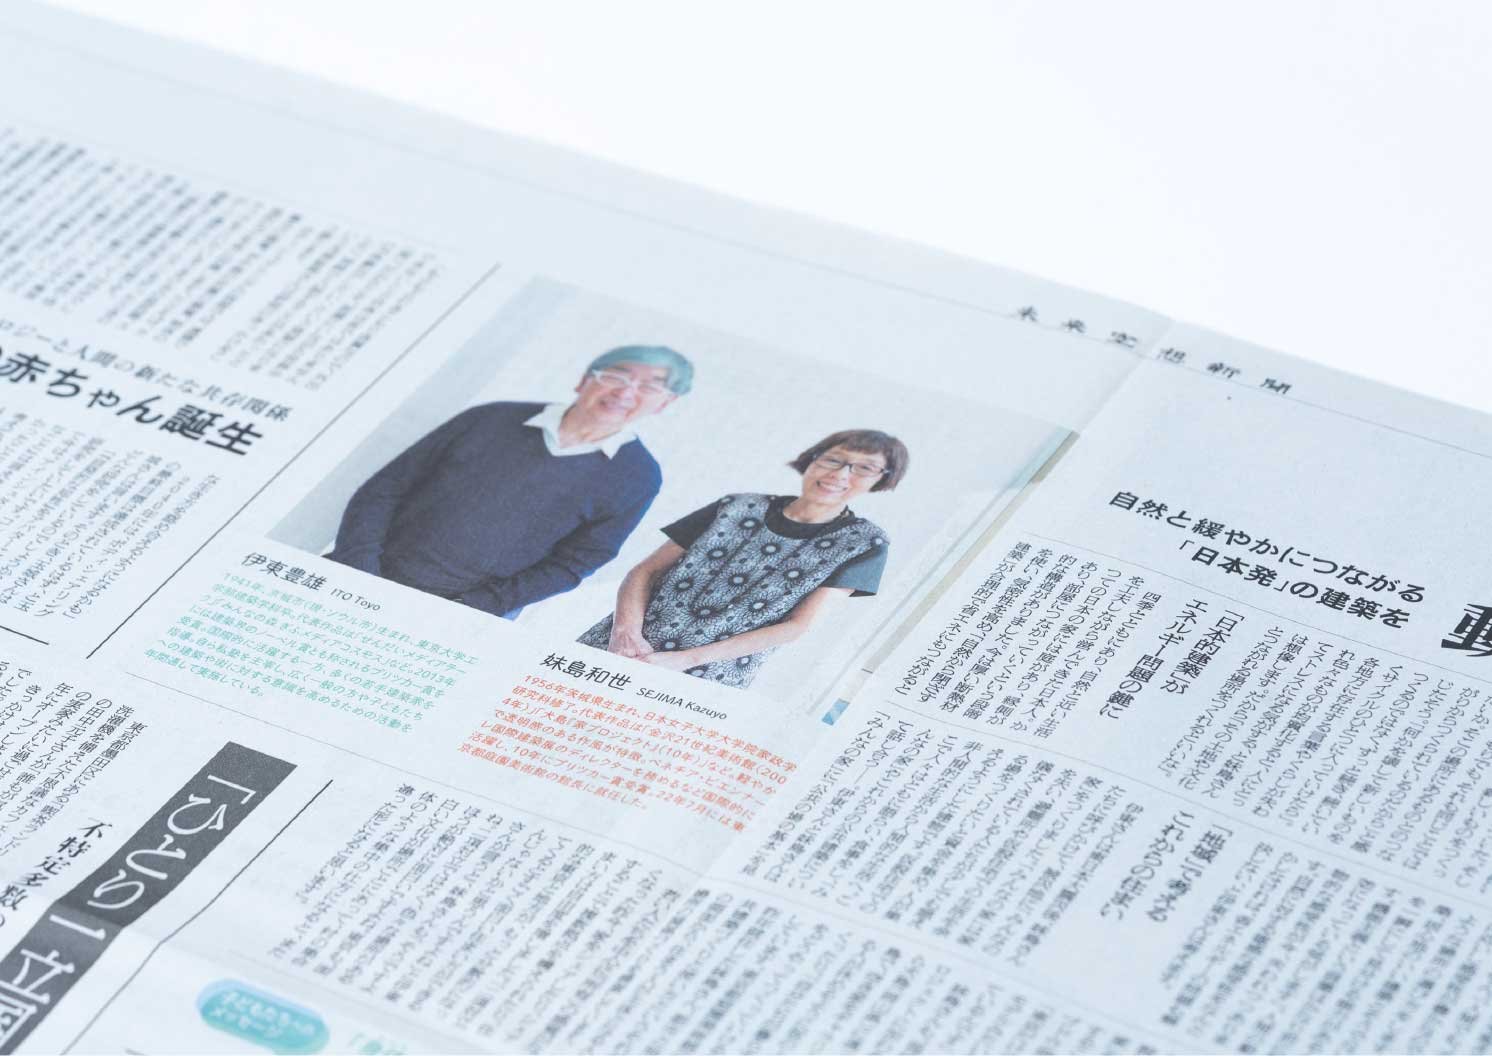 建築家である伊東豊雄さんと妹島和世さんによる記事  | Make New Magazine「未来の定番」をつくるために、パナソニックのリアルな姿を伝えるメディア